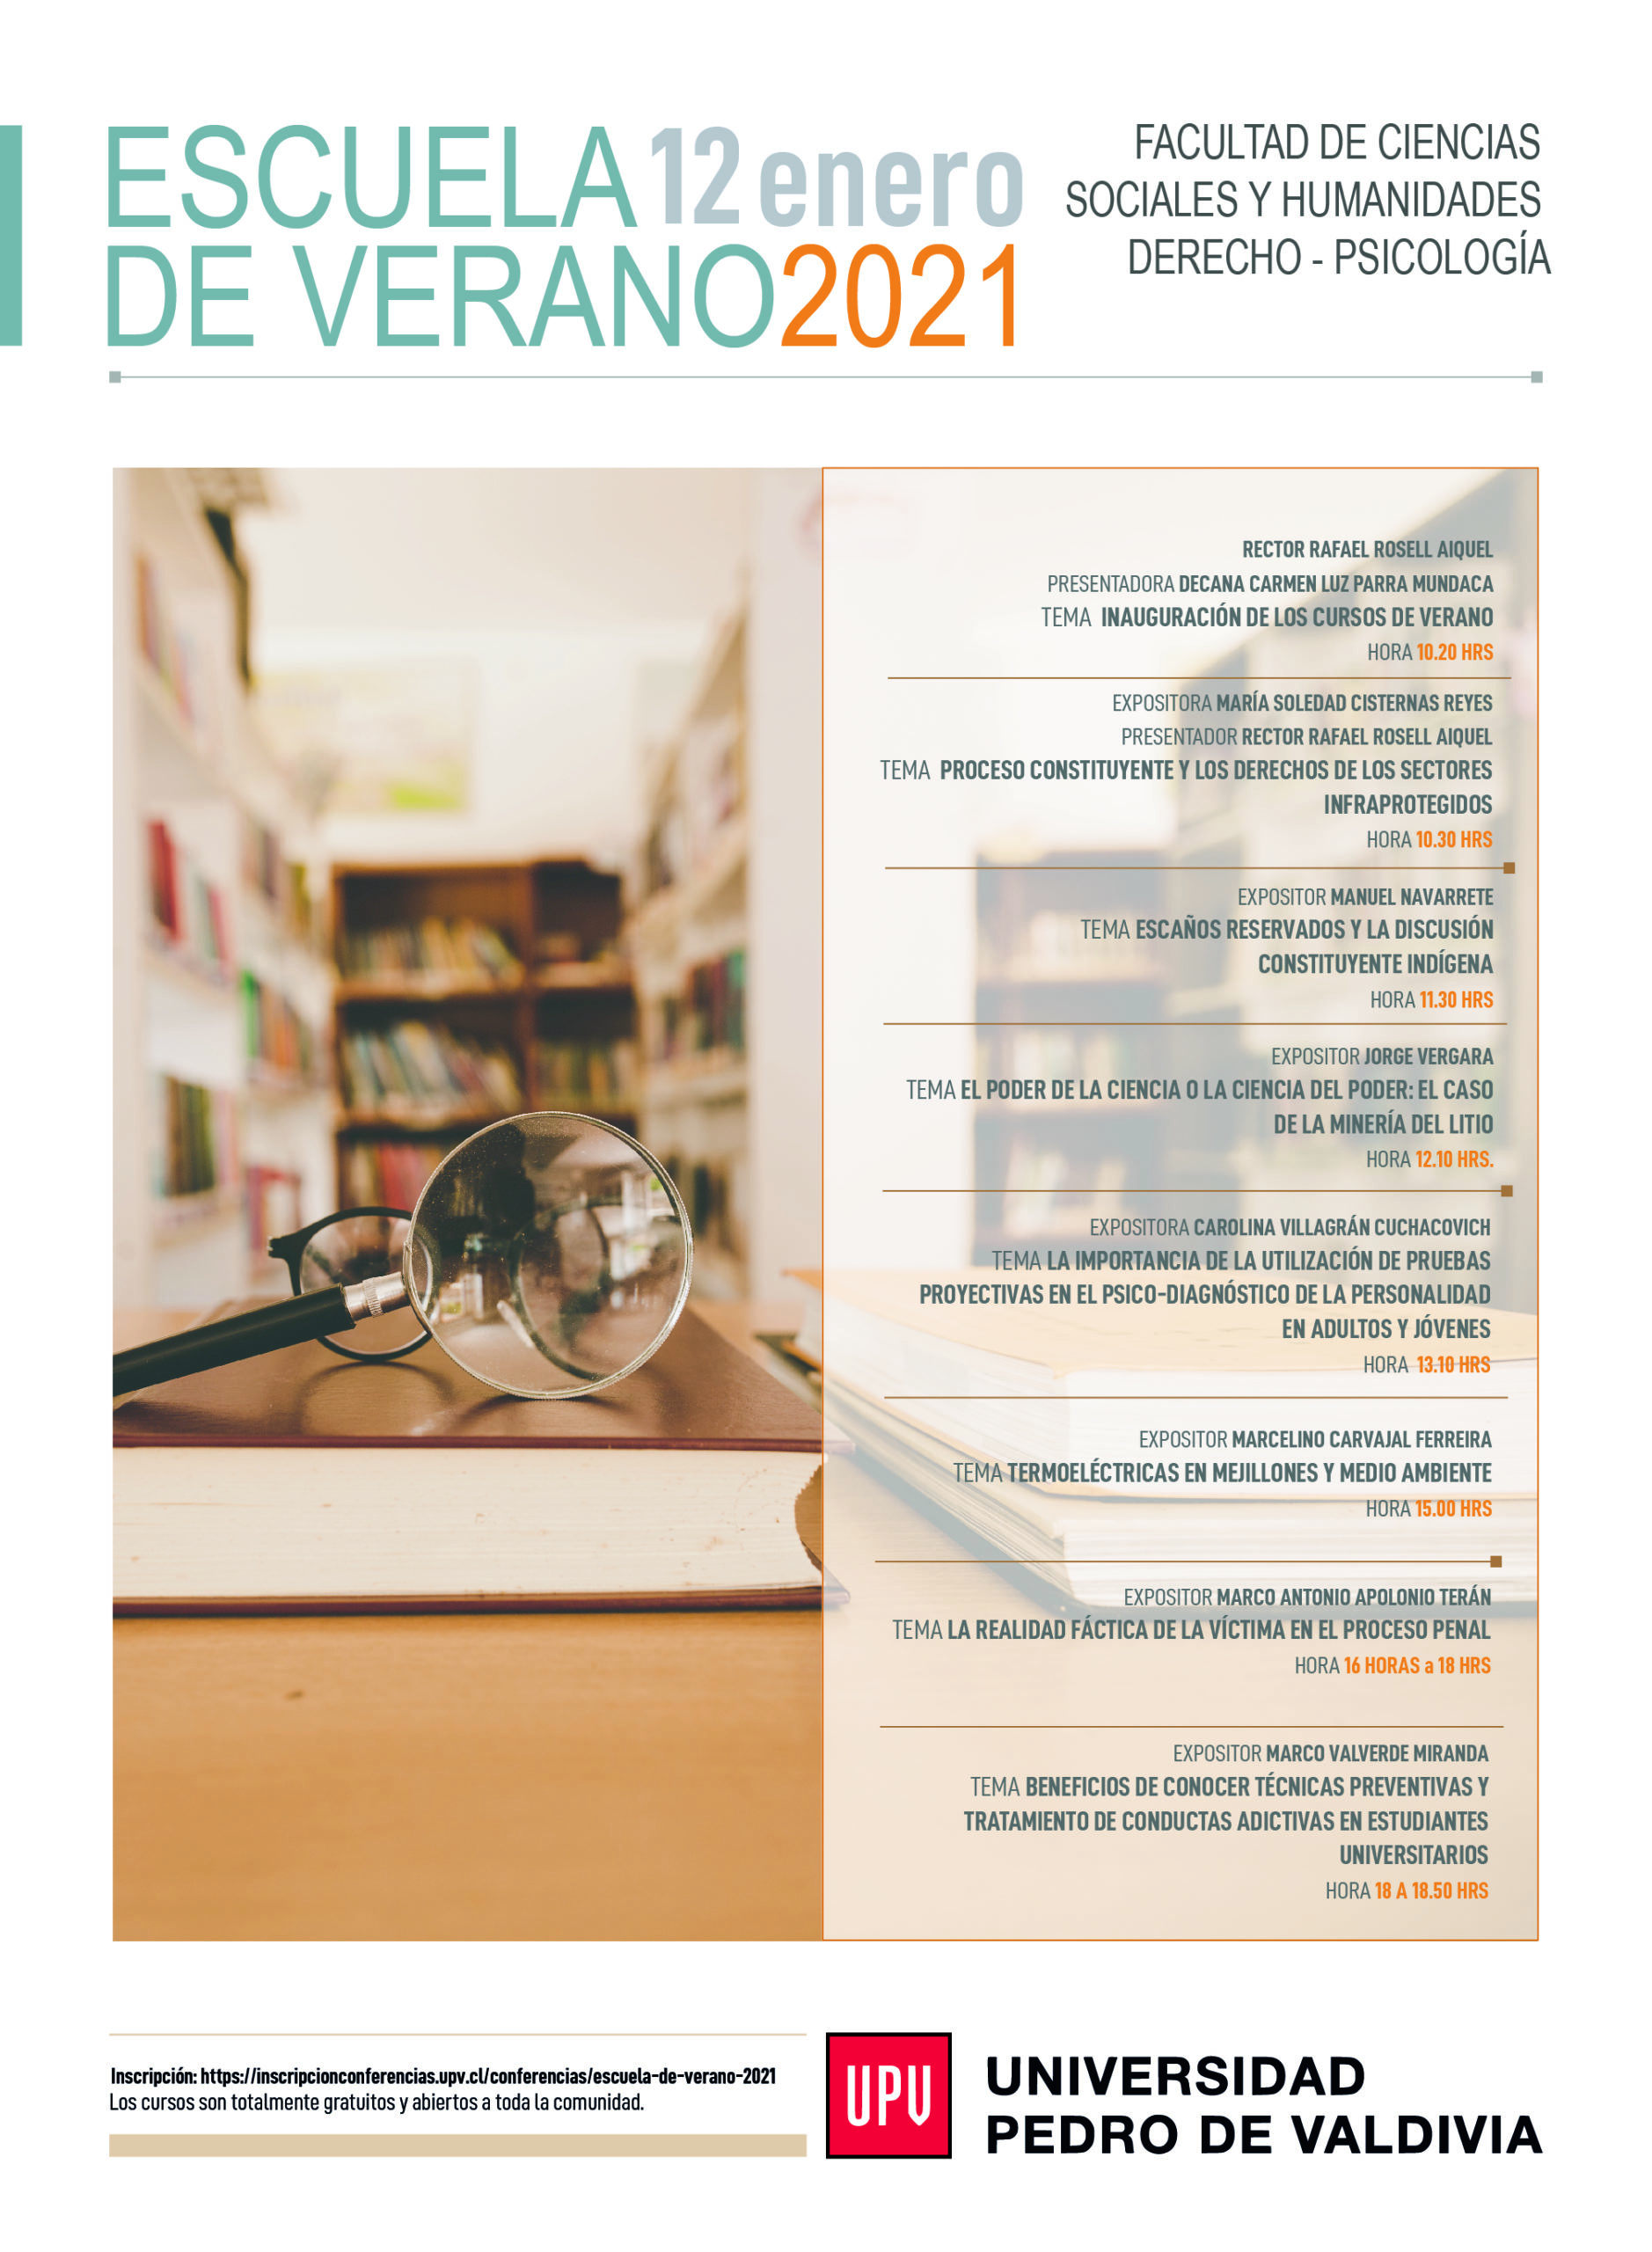 Escuela de verano 2021: Universidad Pedro de Valdivia